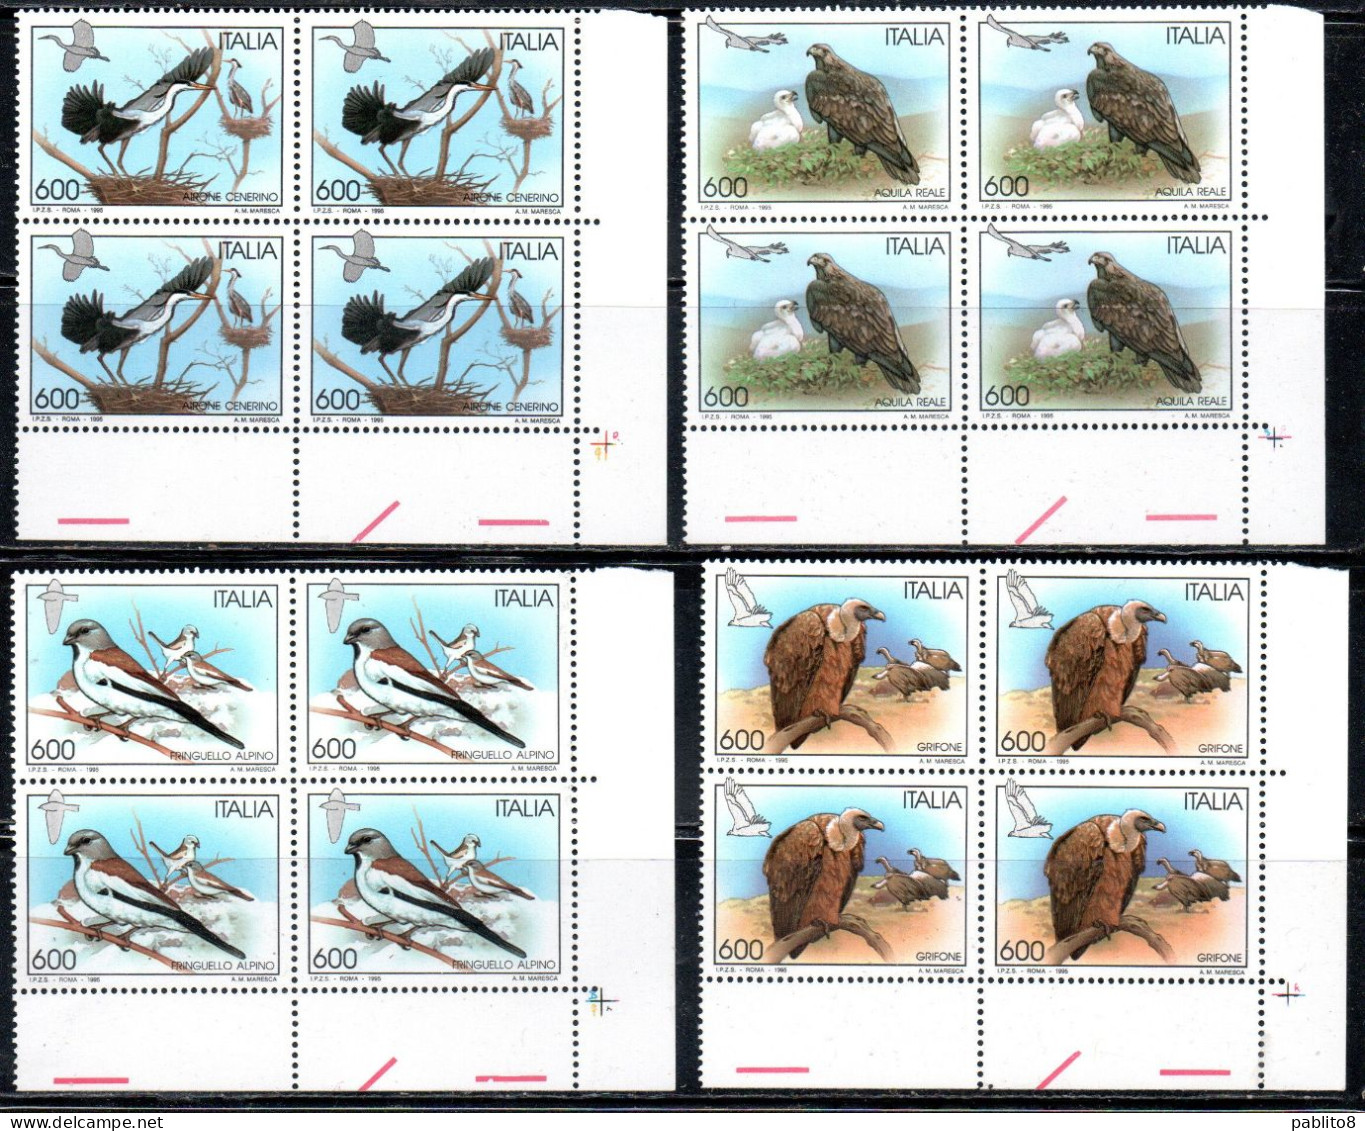 ITALIA REPUBBLICA ITALY REPUBLIC 1995 FAUNA UCCELLI BIRDS SERIE COMPLETA FULL SET QUARTINA ANGOLO DI FOGLIO BLOCK MNH - 1991-00: Mint/hinged